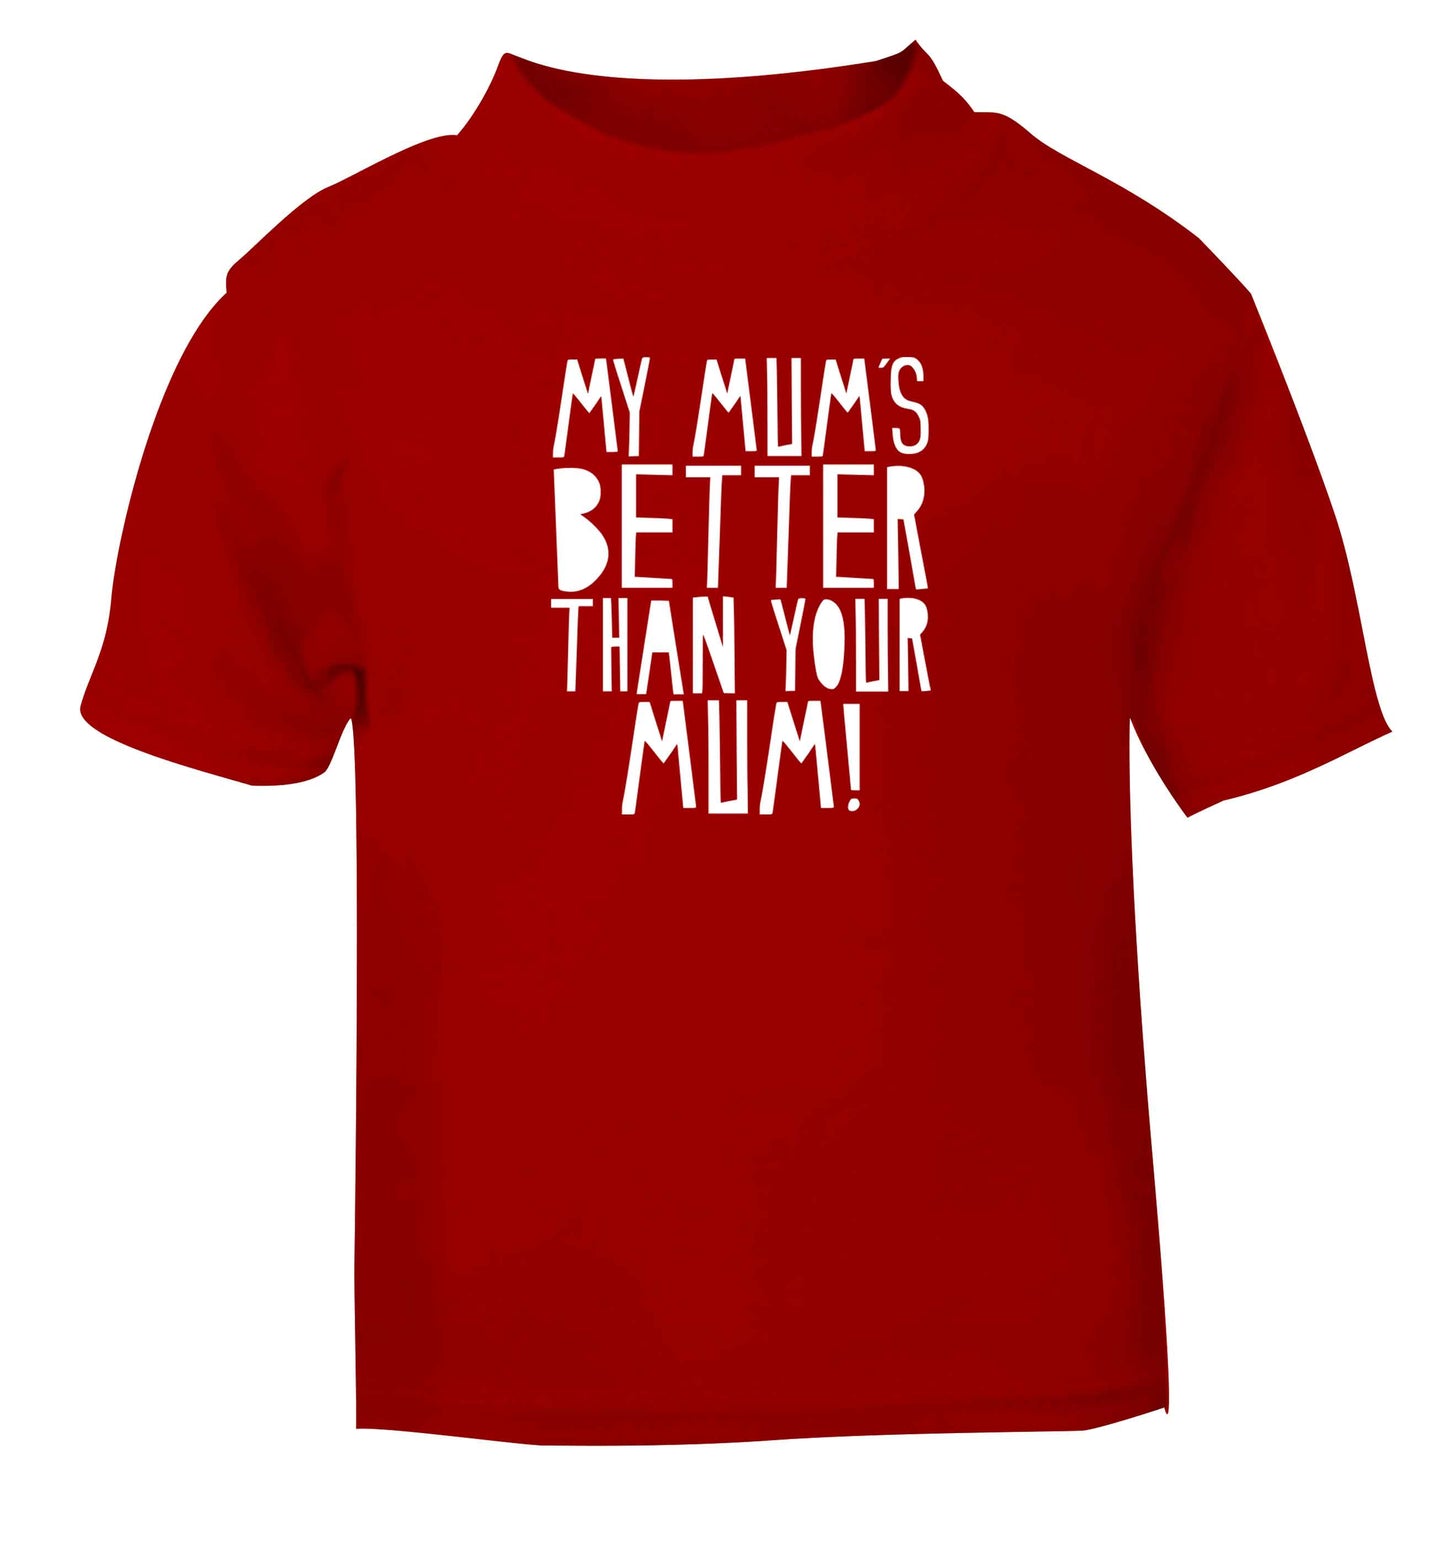 My mum's better than your mum red baby toddler Tshirt 2 Years